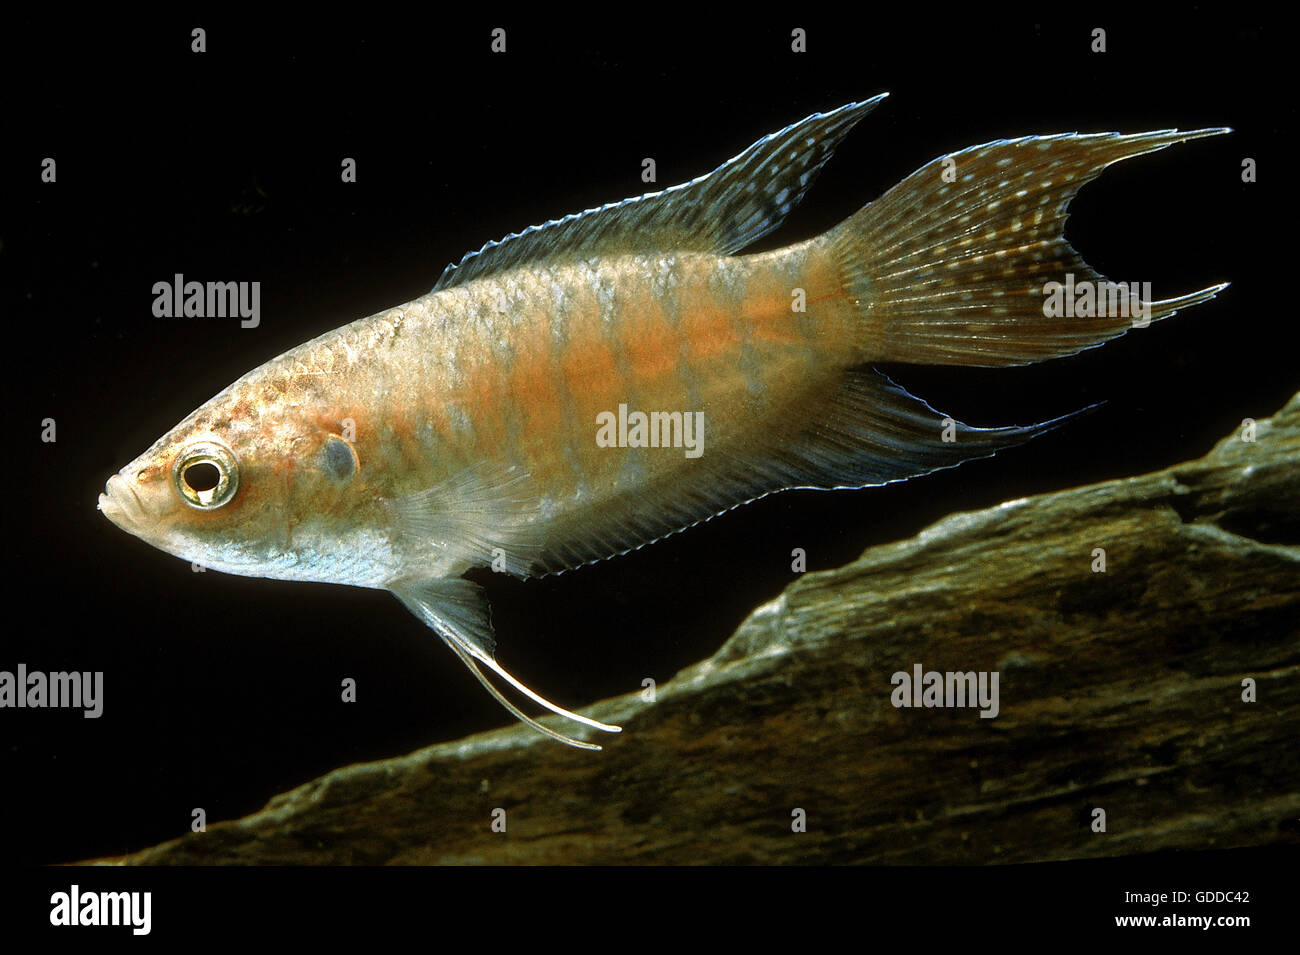 PARADISE FISH macropodus opercularis Stock Photo